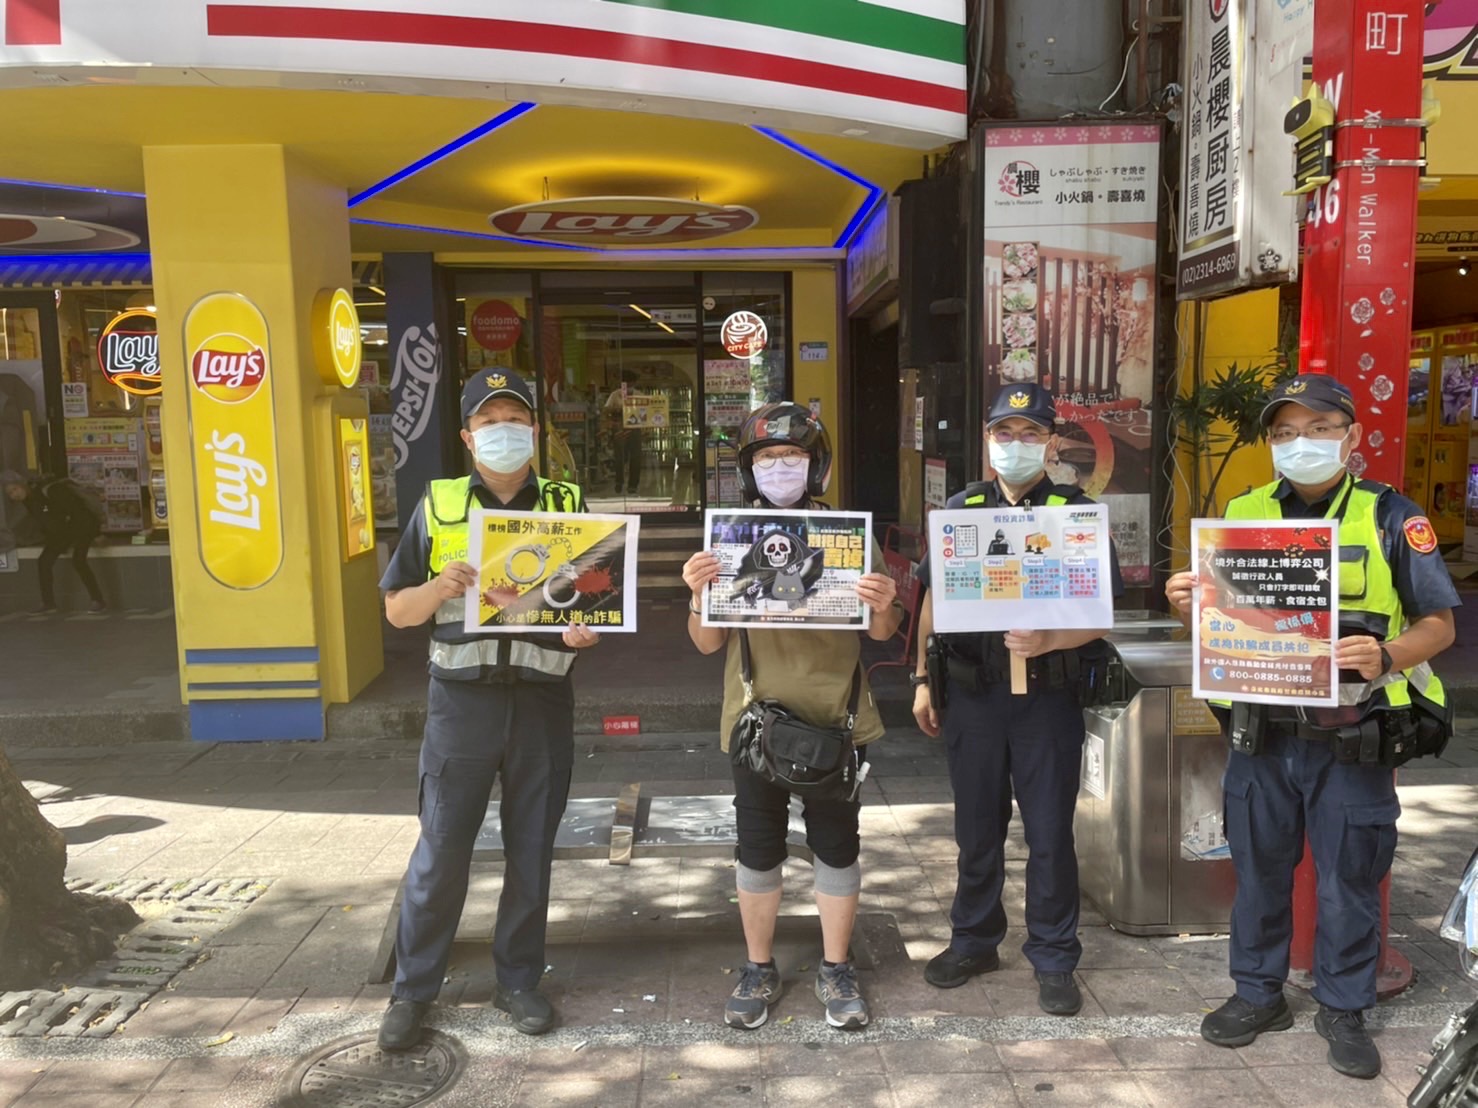 臺北市保安警察大隊至西門町以徒步巡邏方式，向民眾解說最新型態詐騙模式，避免落入詐團話術上當受騙。